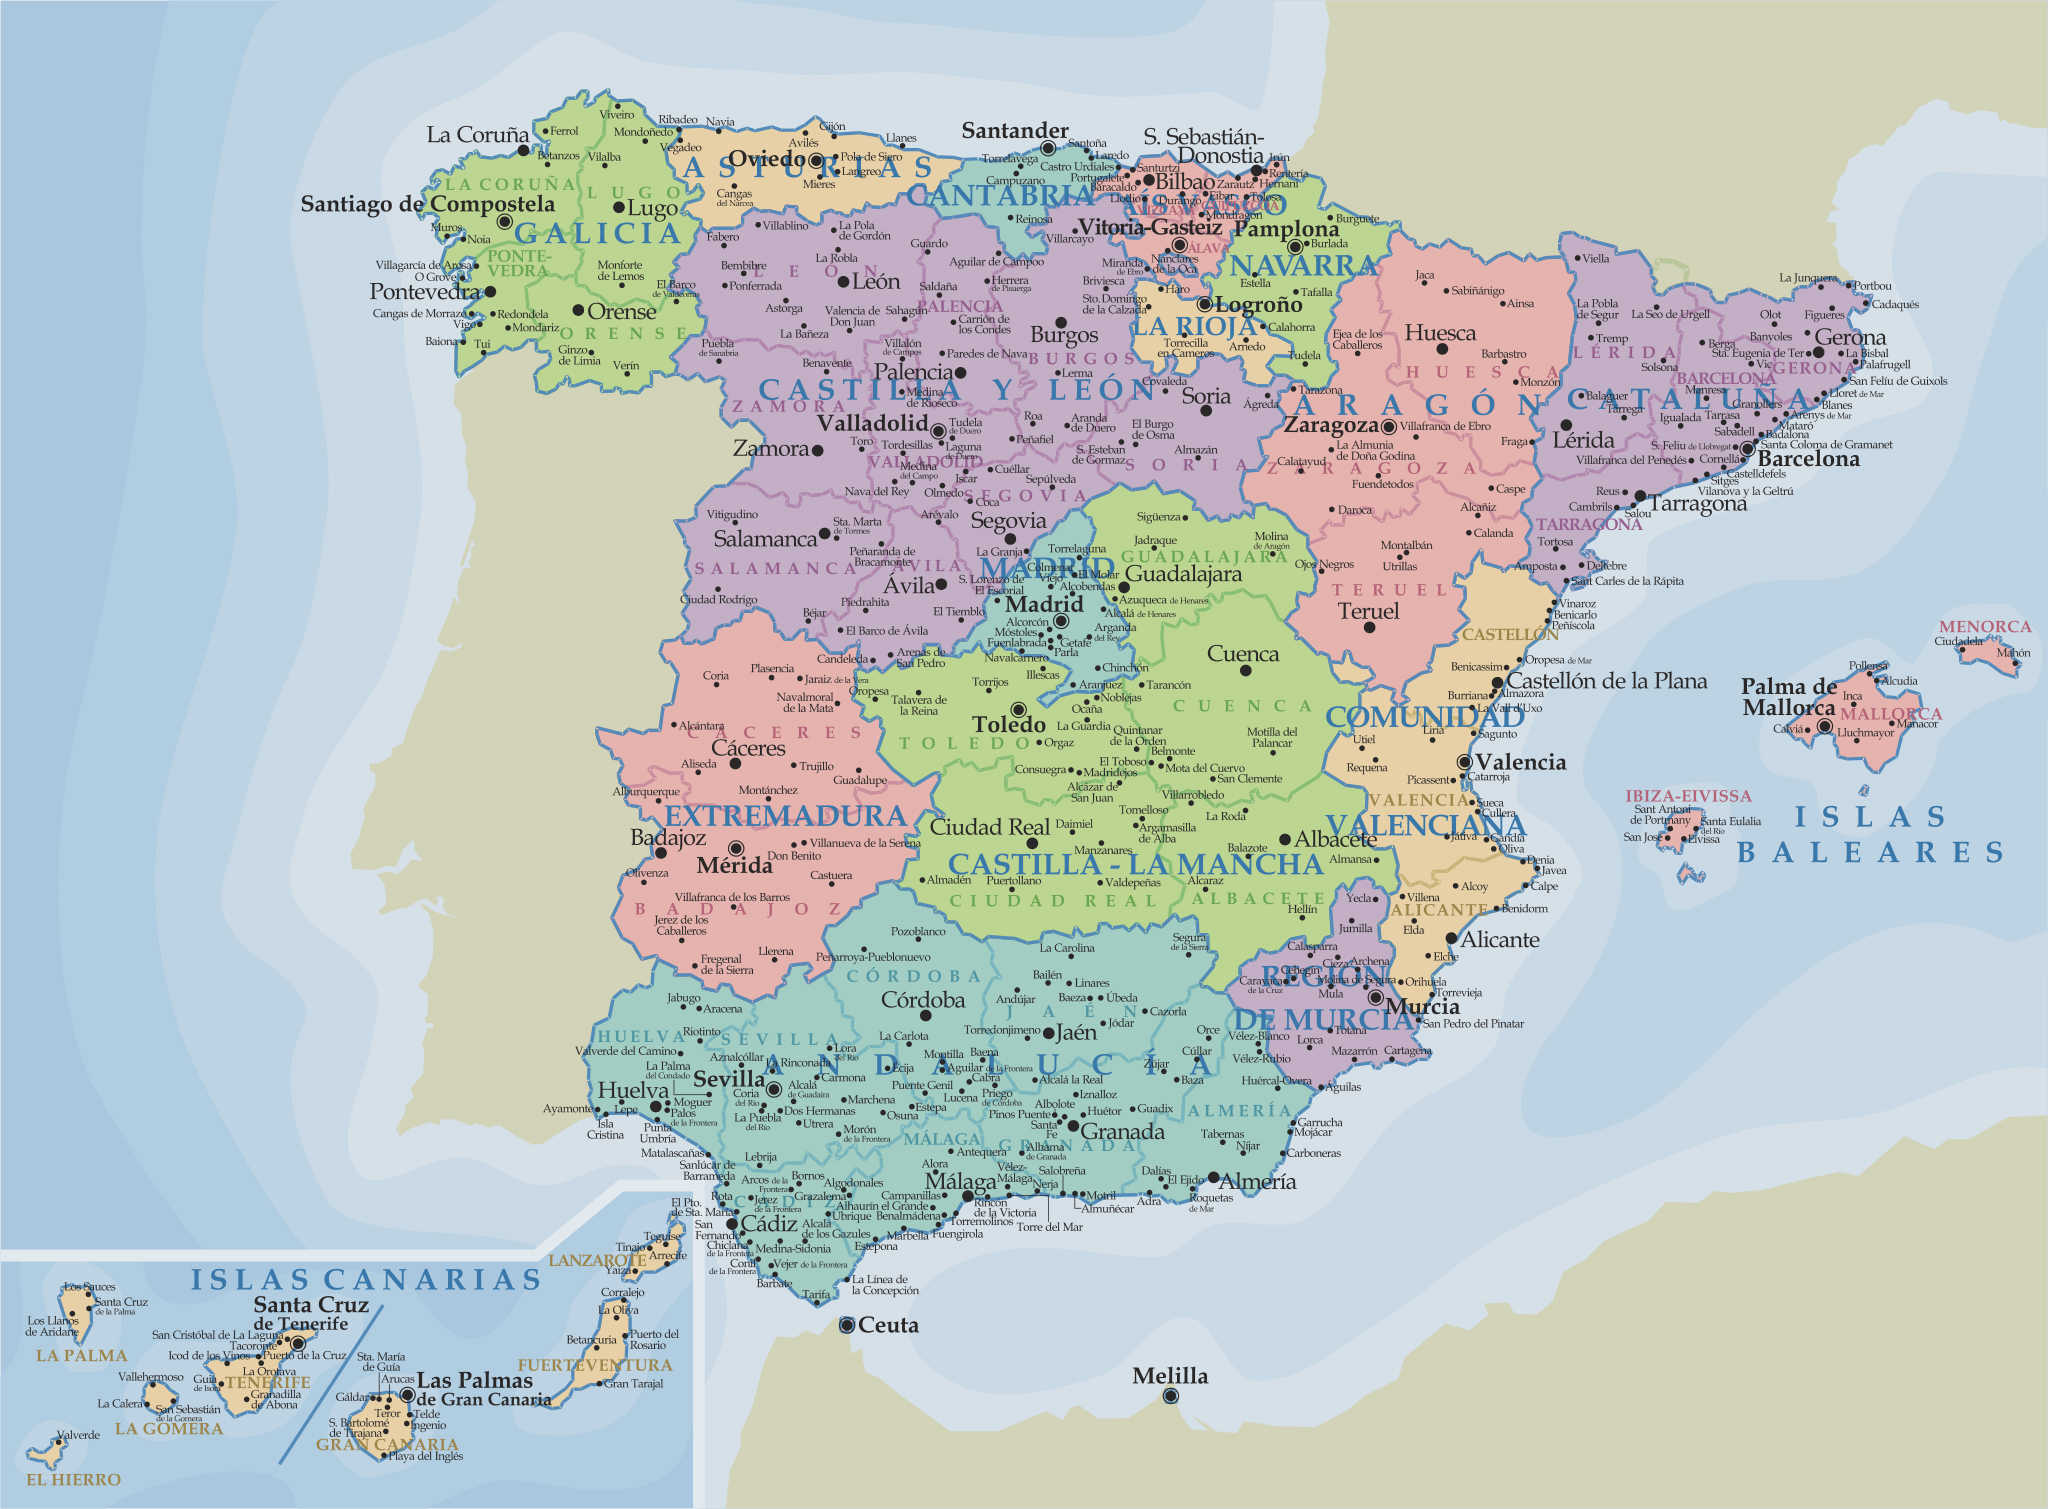 Résultat de
                          recherche d'images pour "carte
                          d'Espagne"